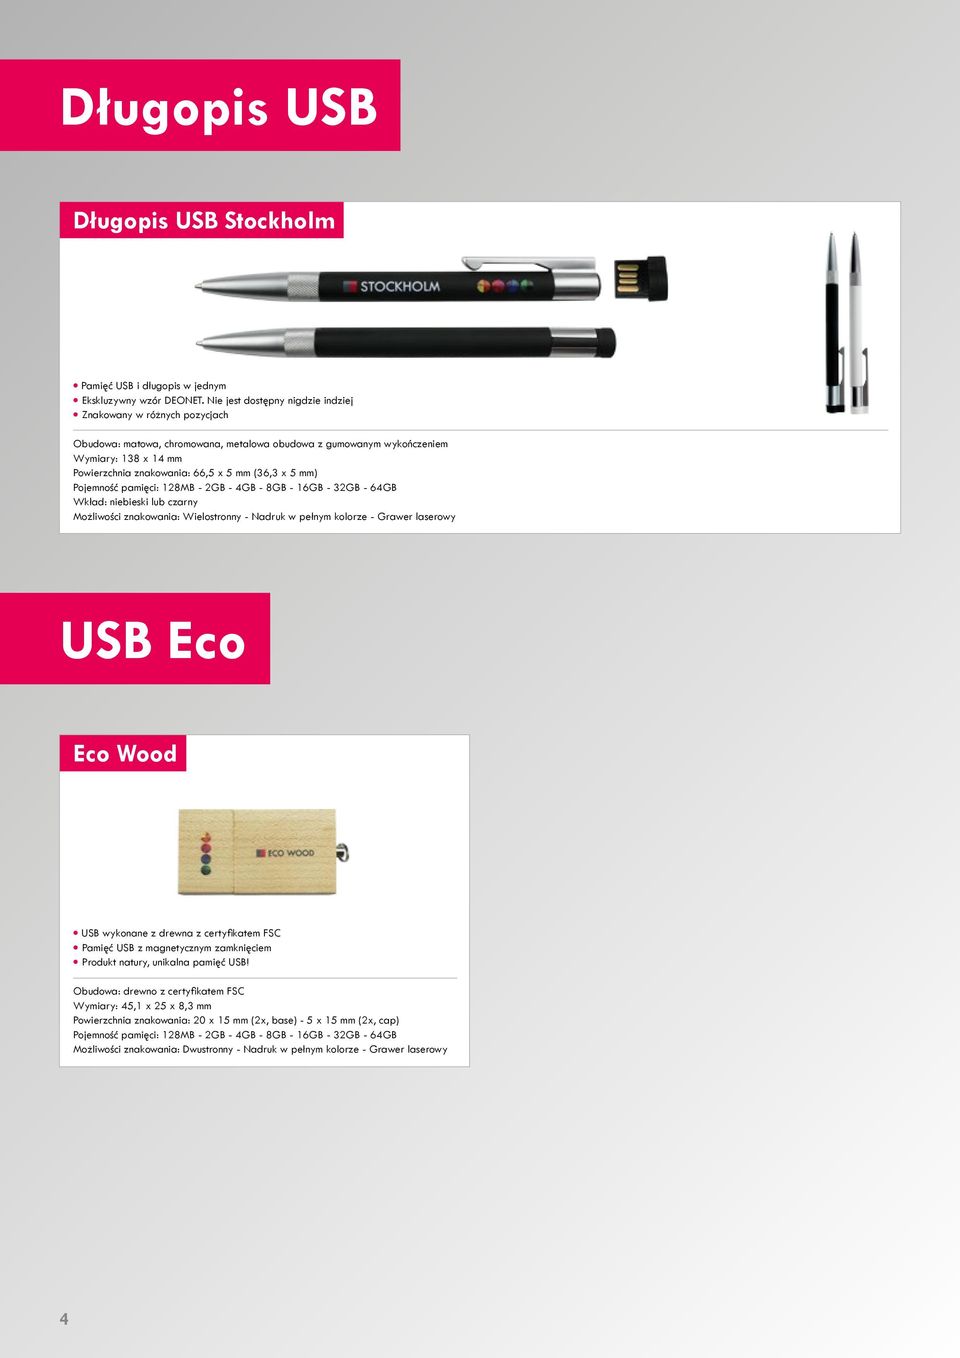 x 5 mm) Pojemność pamięci: 128MB - 2GB - 4GB - 8GB - 16GB - 32GB - 64GB Wkład: niebieski lub czarny Możliwości znakowania: Wielostronny - Nadruk w pełnym kolorze - Grawer laserowy USB Eco Eco Wood